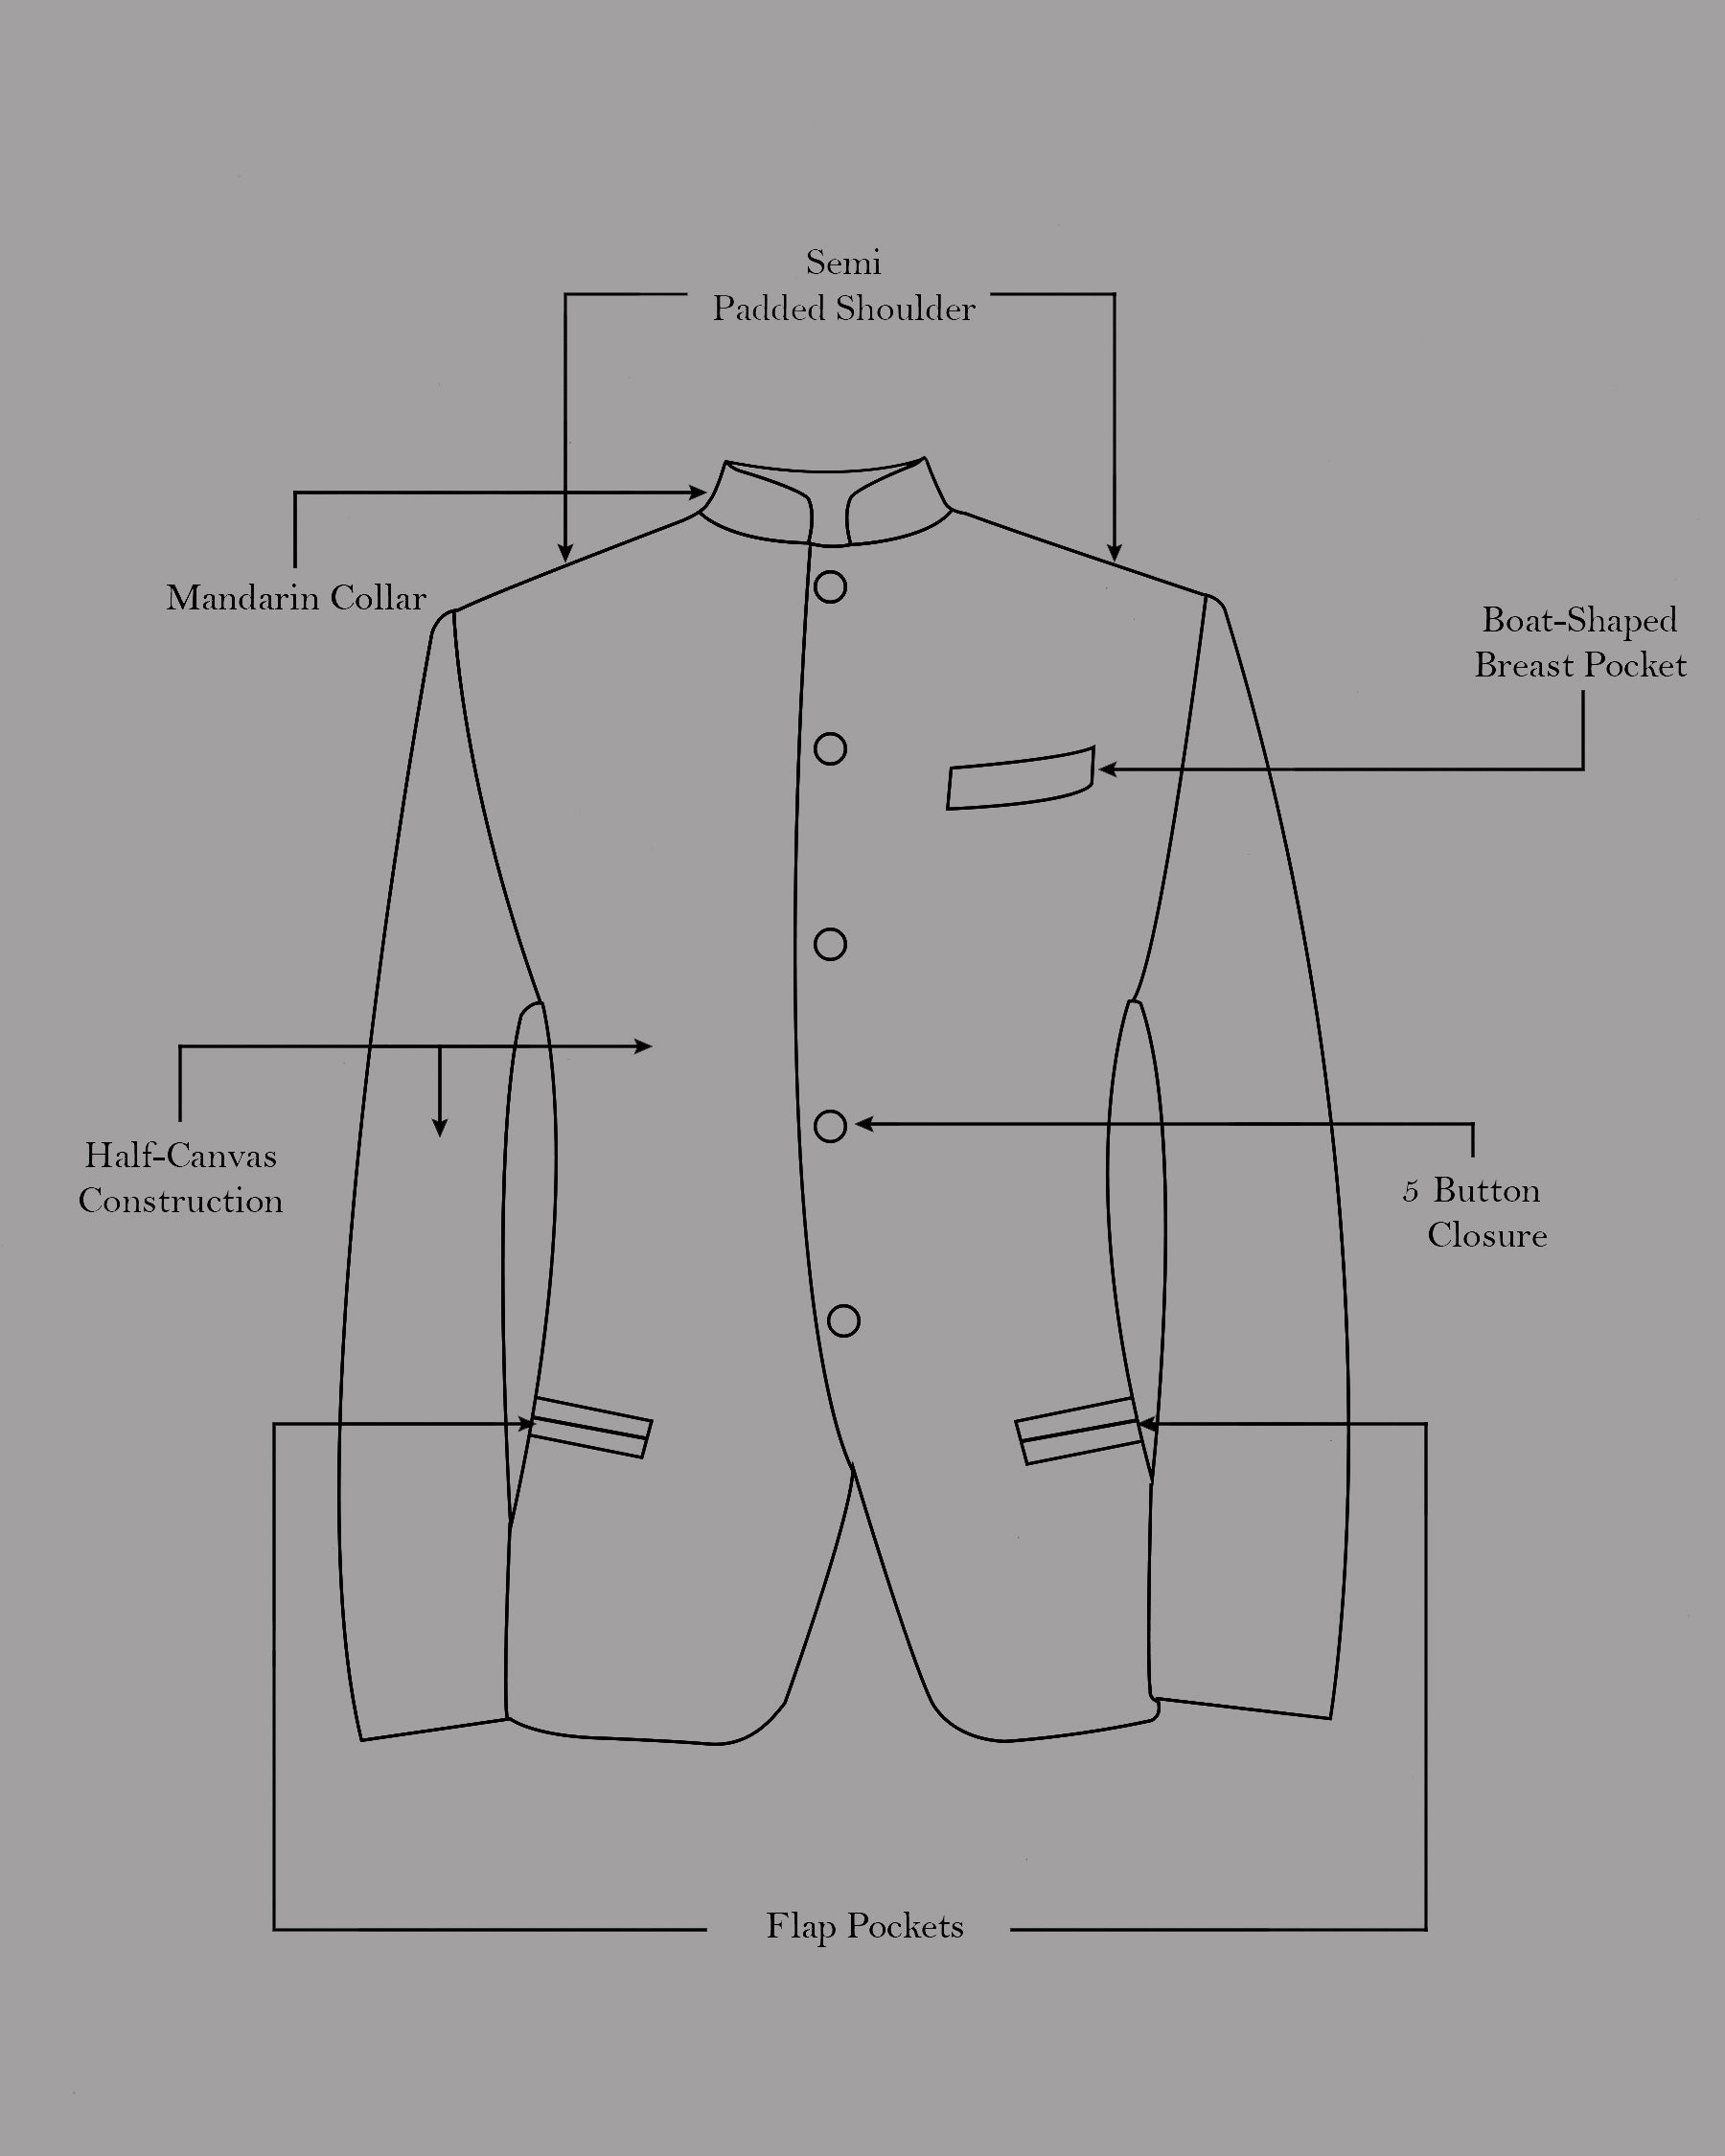 Moon Mist Beige Bandhgala Premium Cotton Stretchable traveler Suit